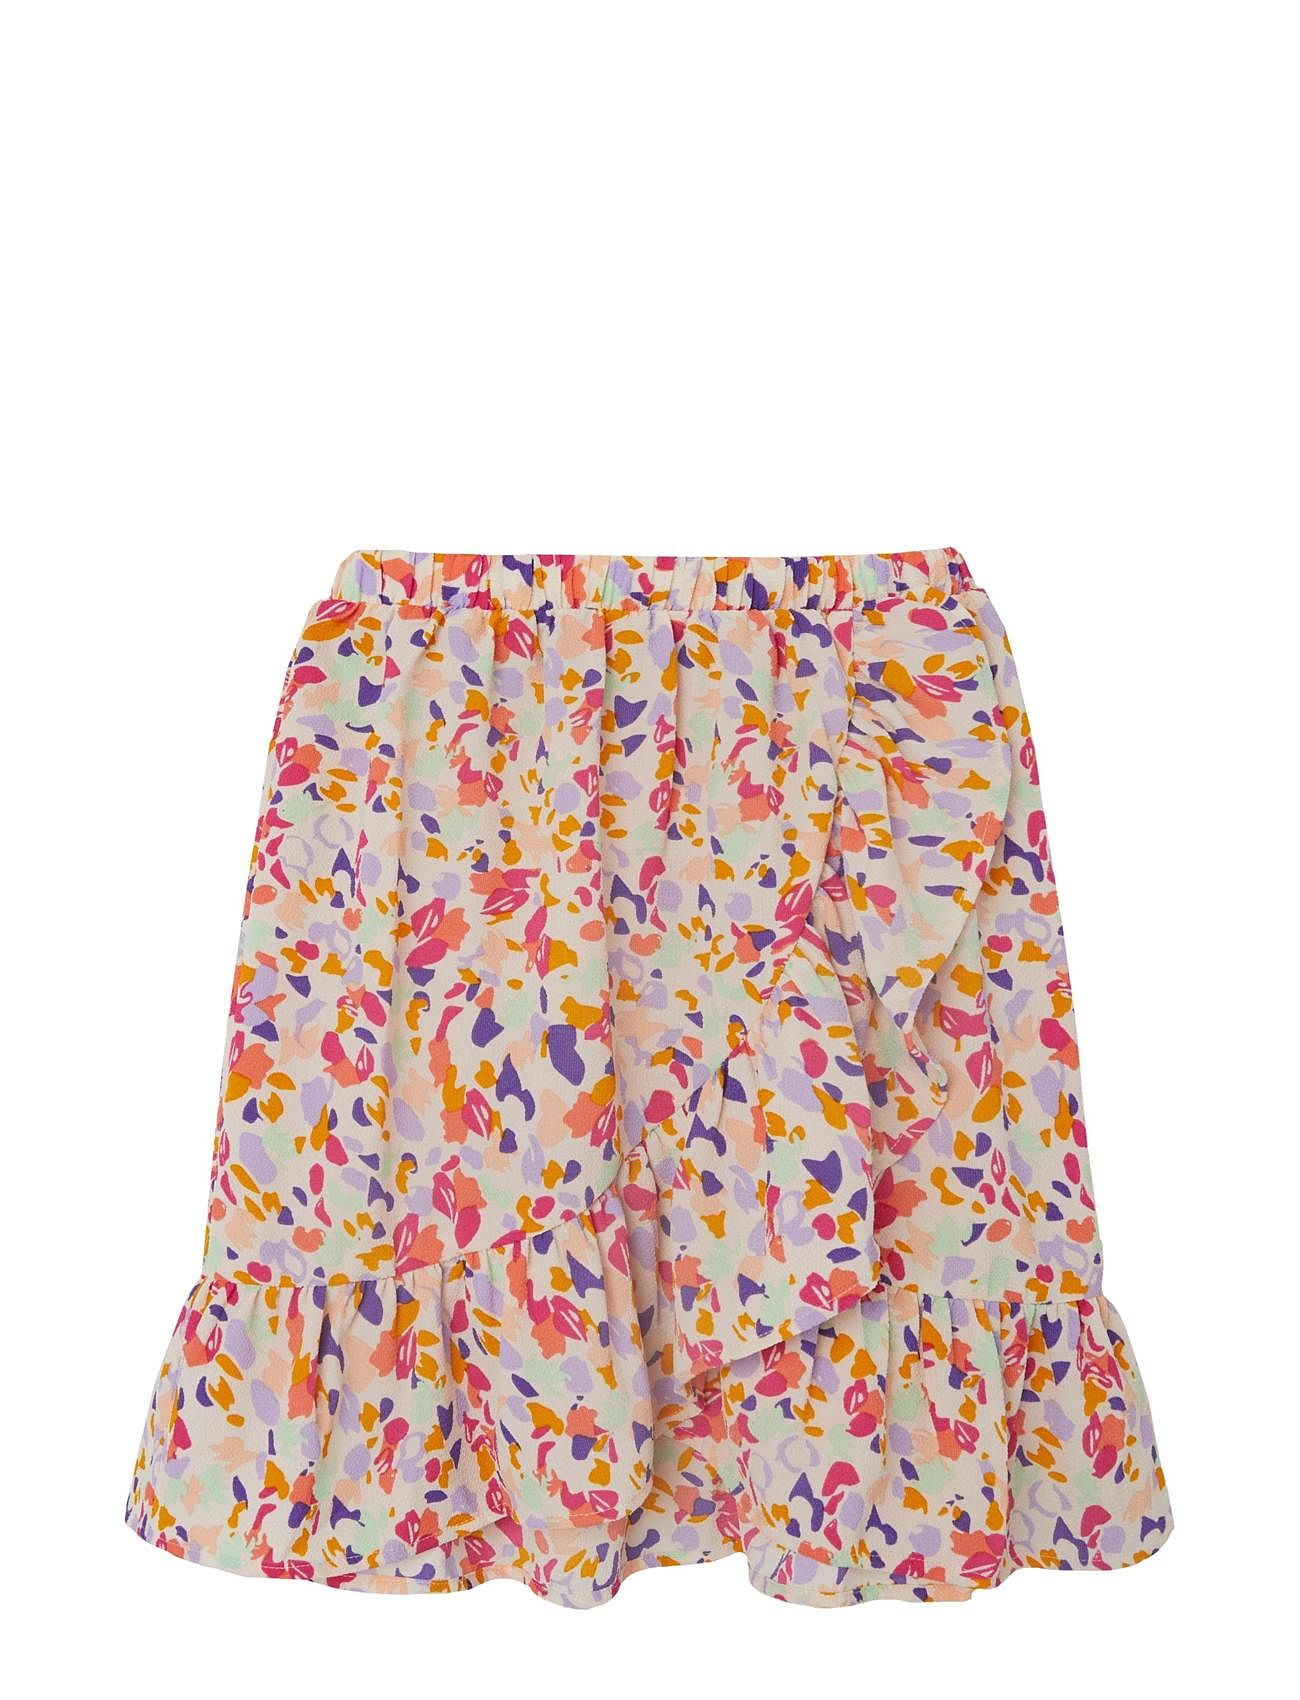 Nkfdirillo Skirt Dresses & Skirts Skirts Short Skirts Multi/patterned Name It